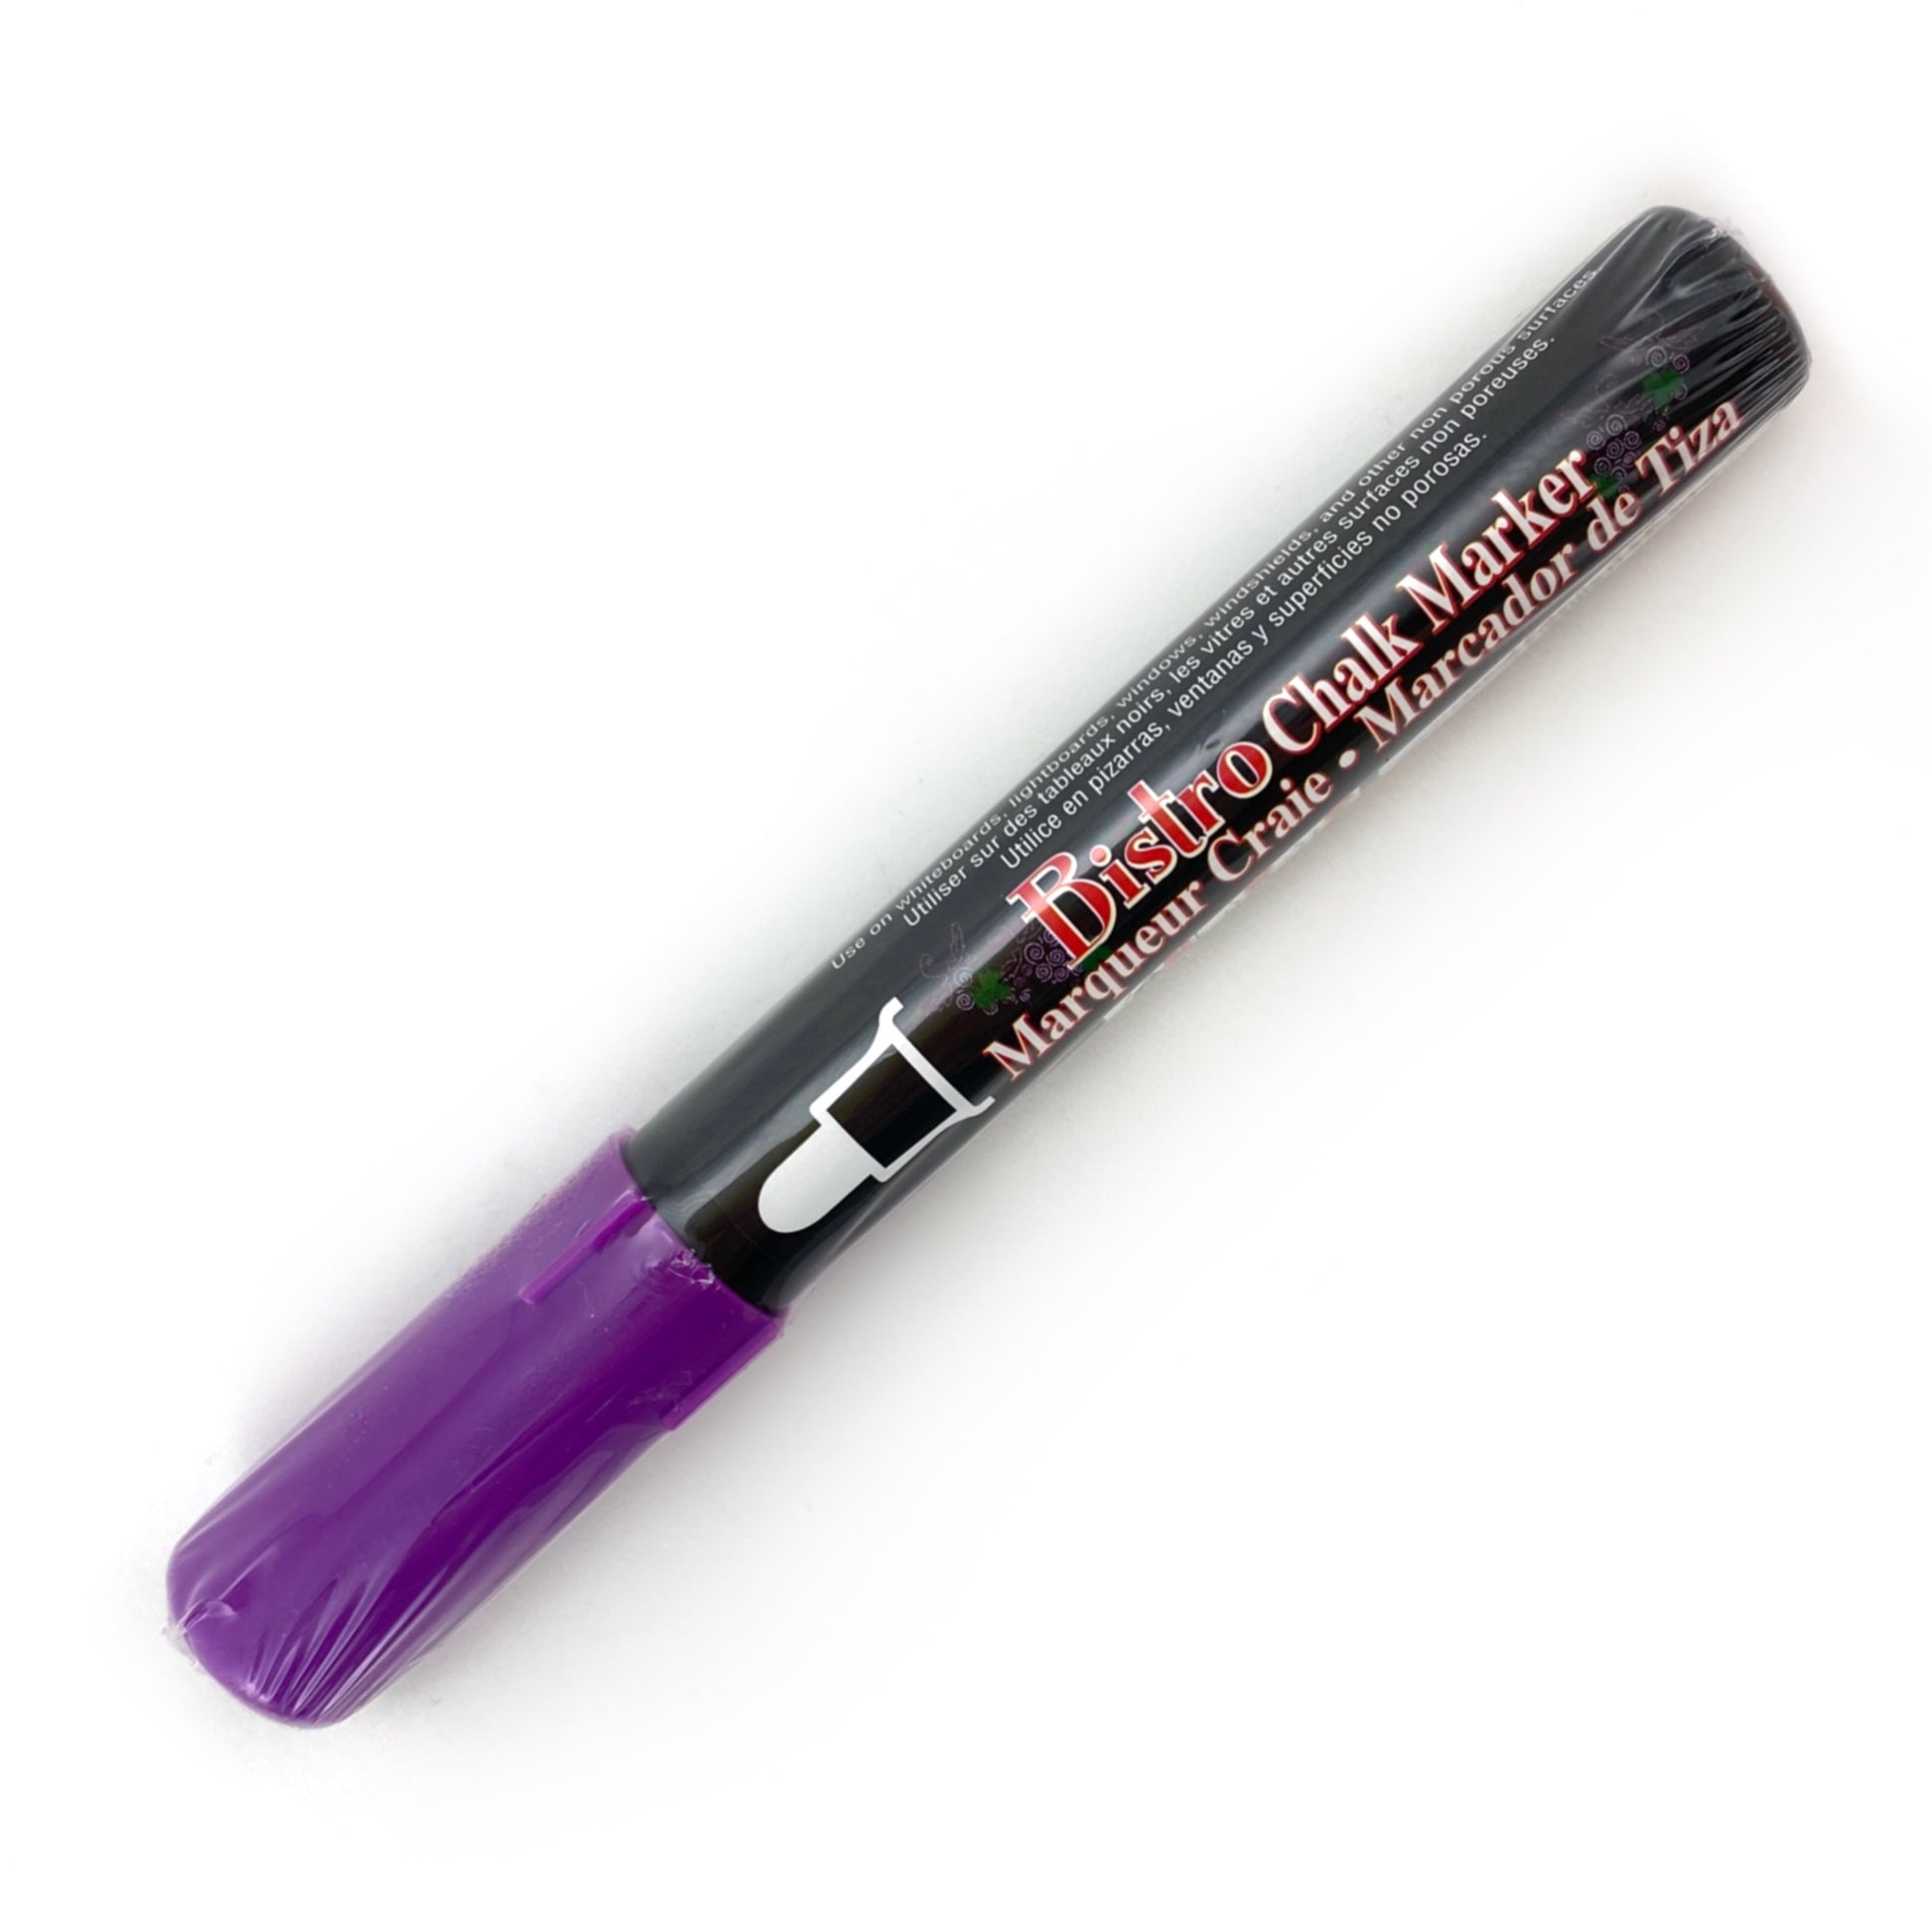 Bistro Chalk Marker - Broad (6mm) - Fluorescent Violet by Marvy Uchida - K. A. Artist Shop